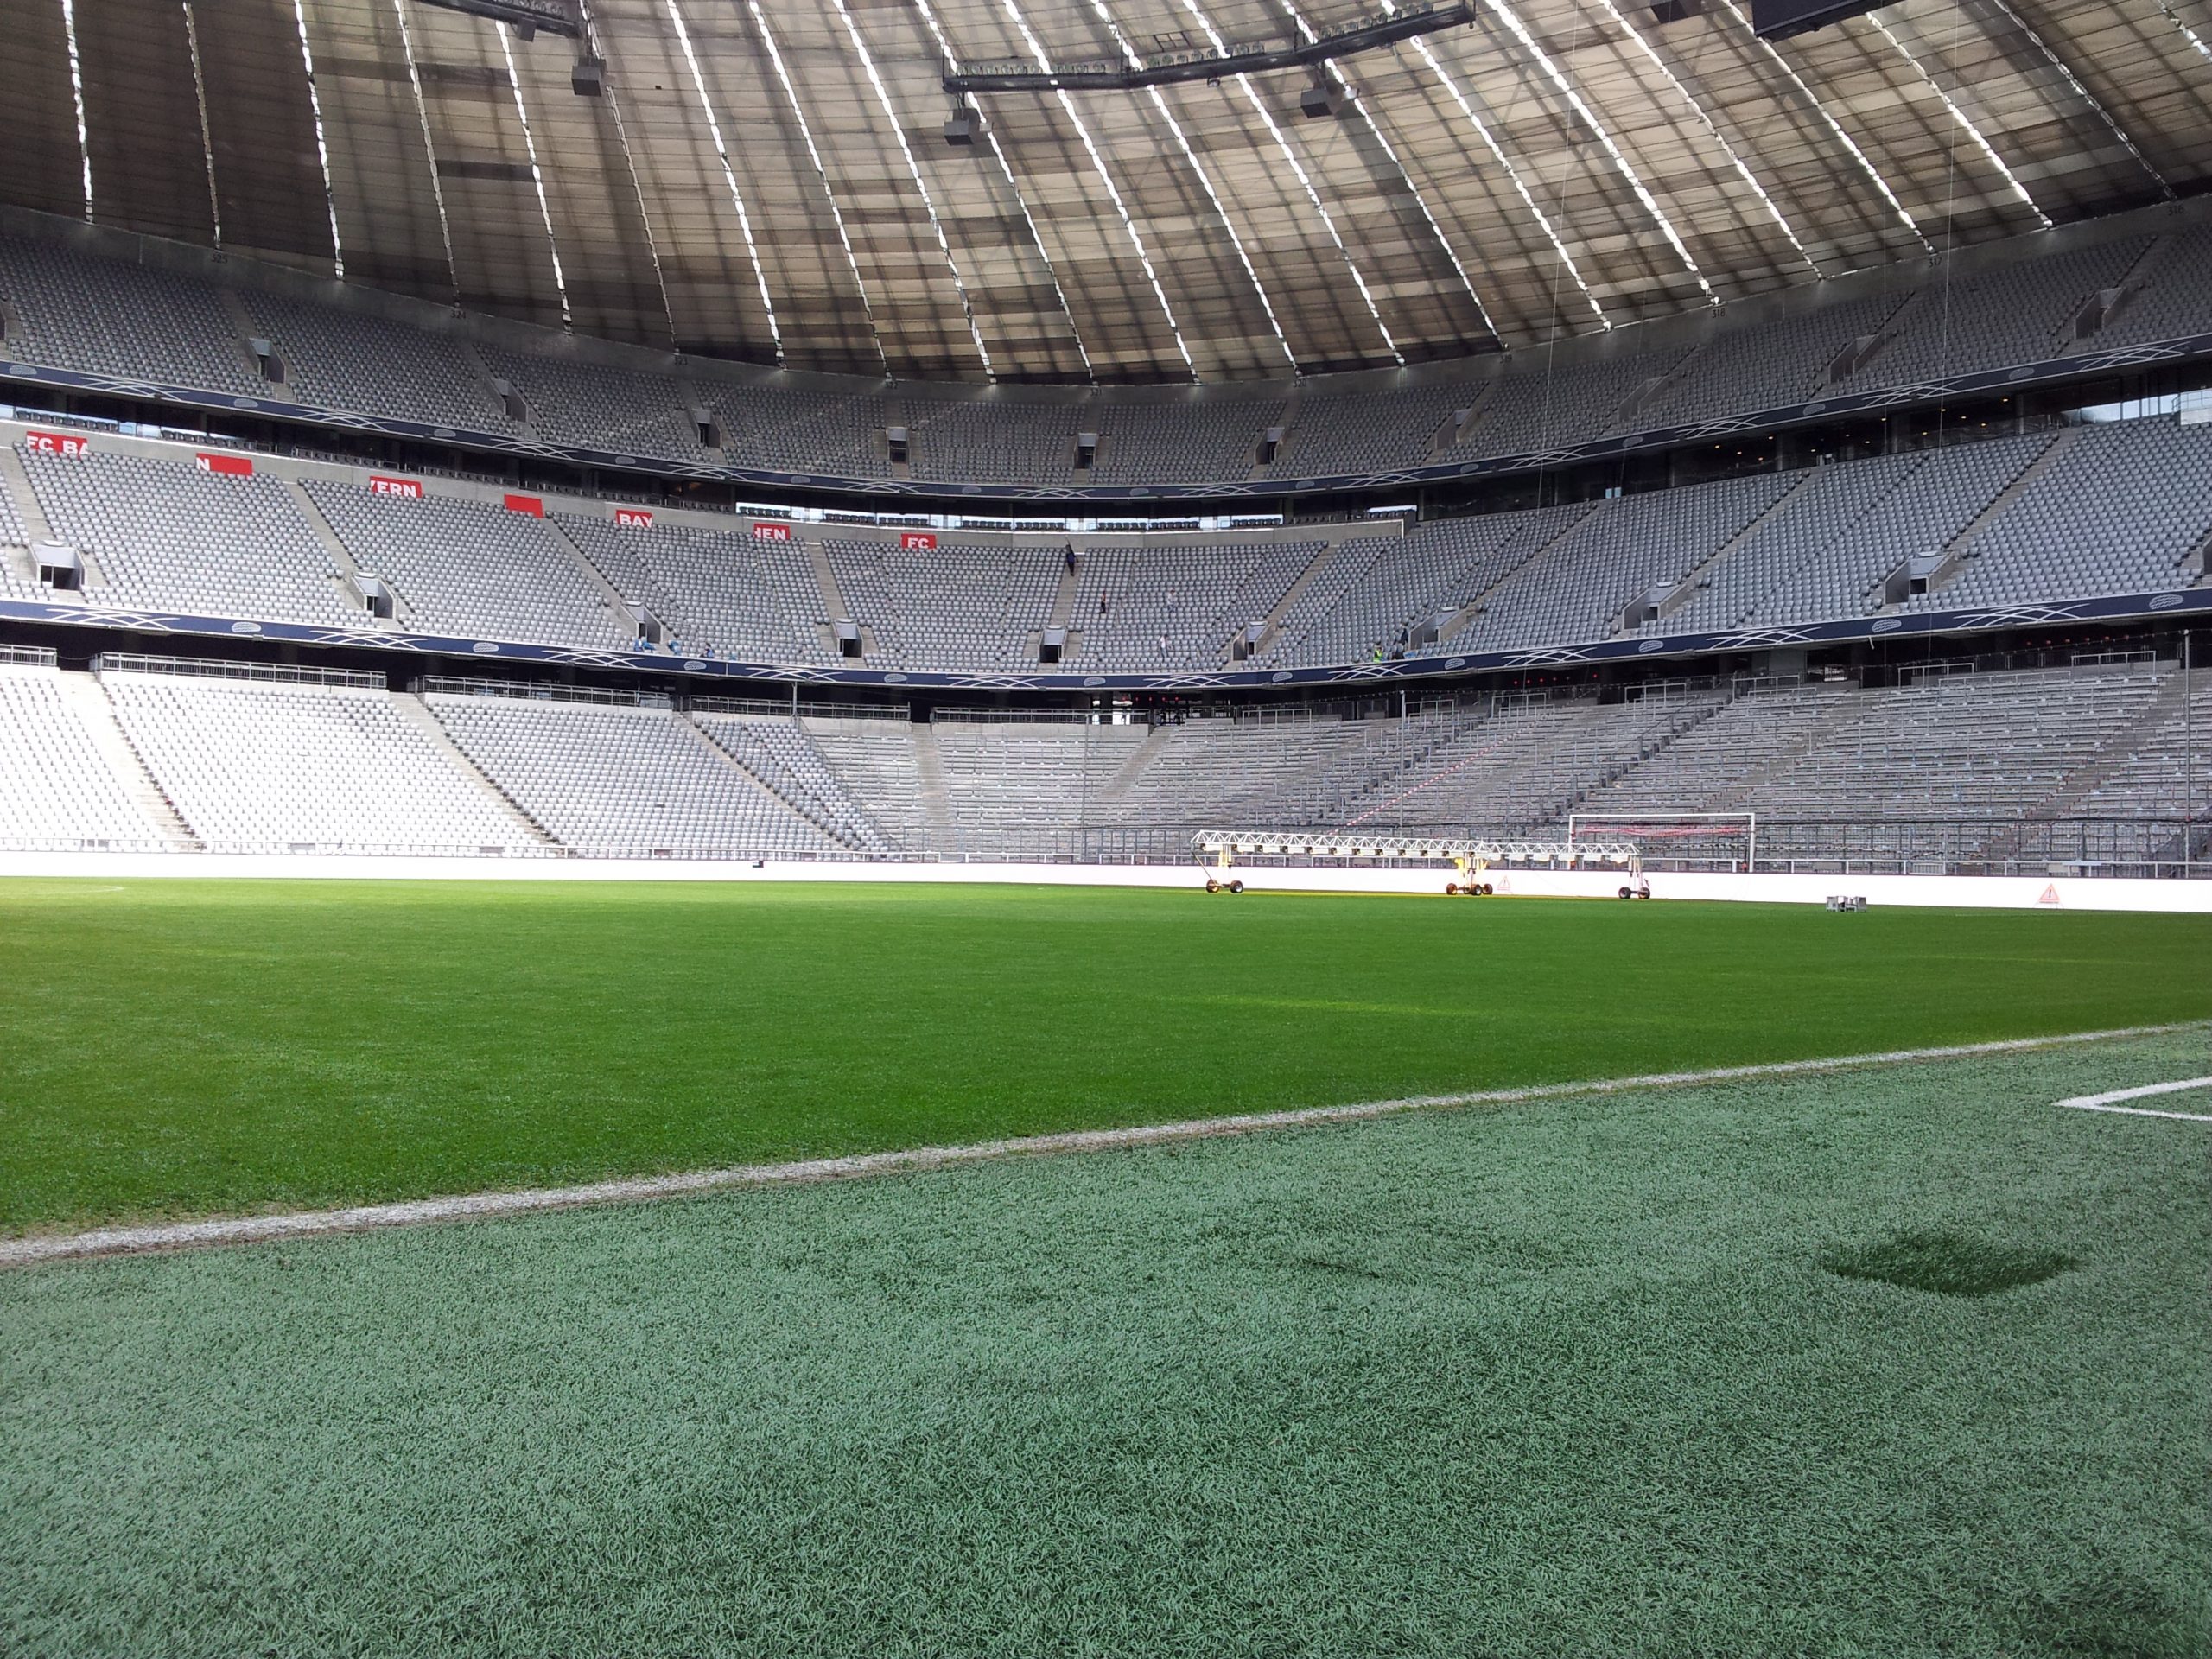 Allianz Arena stadium in Munich